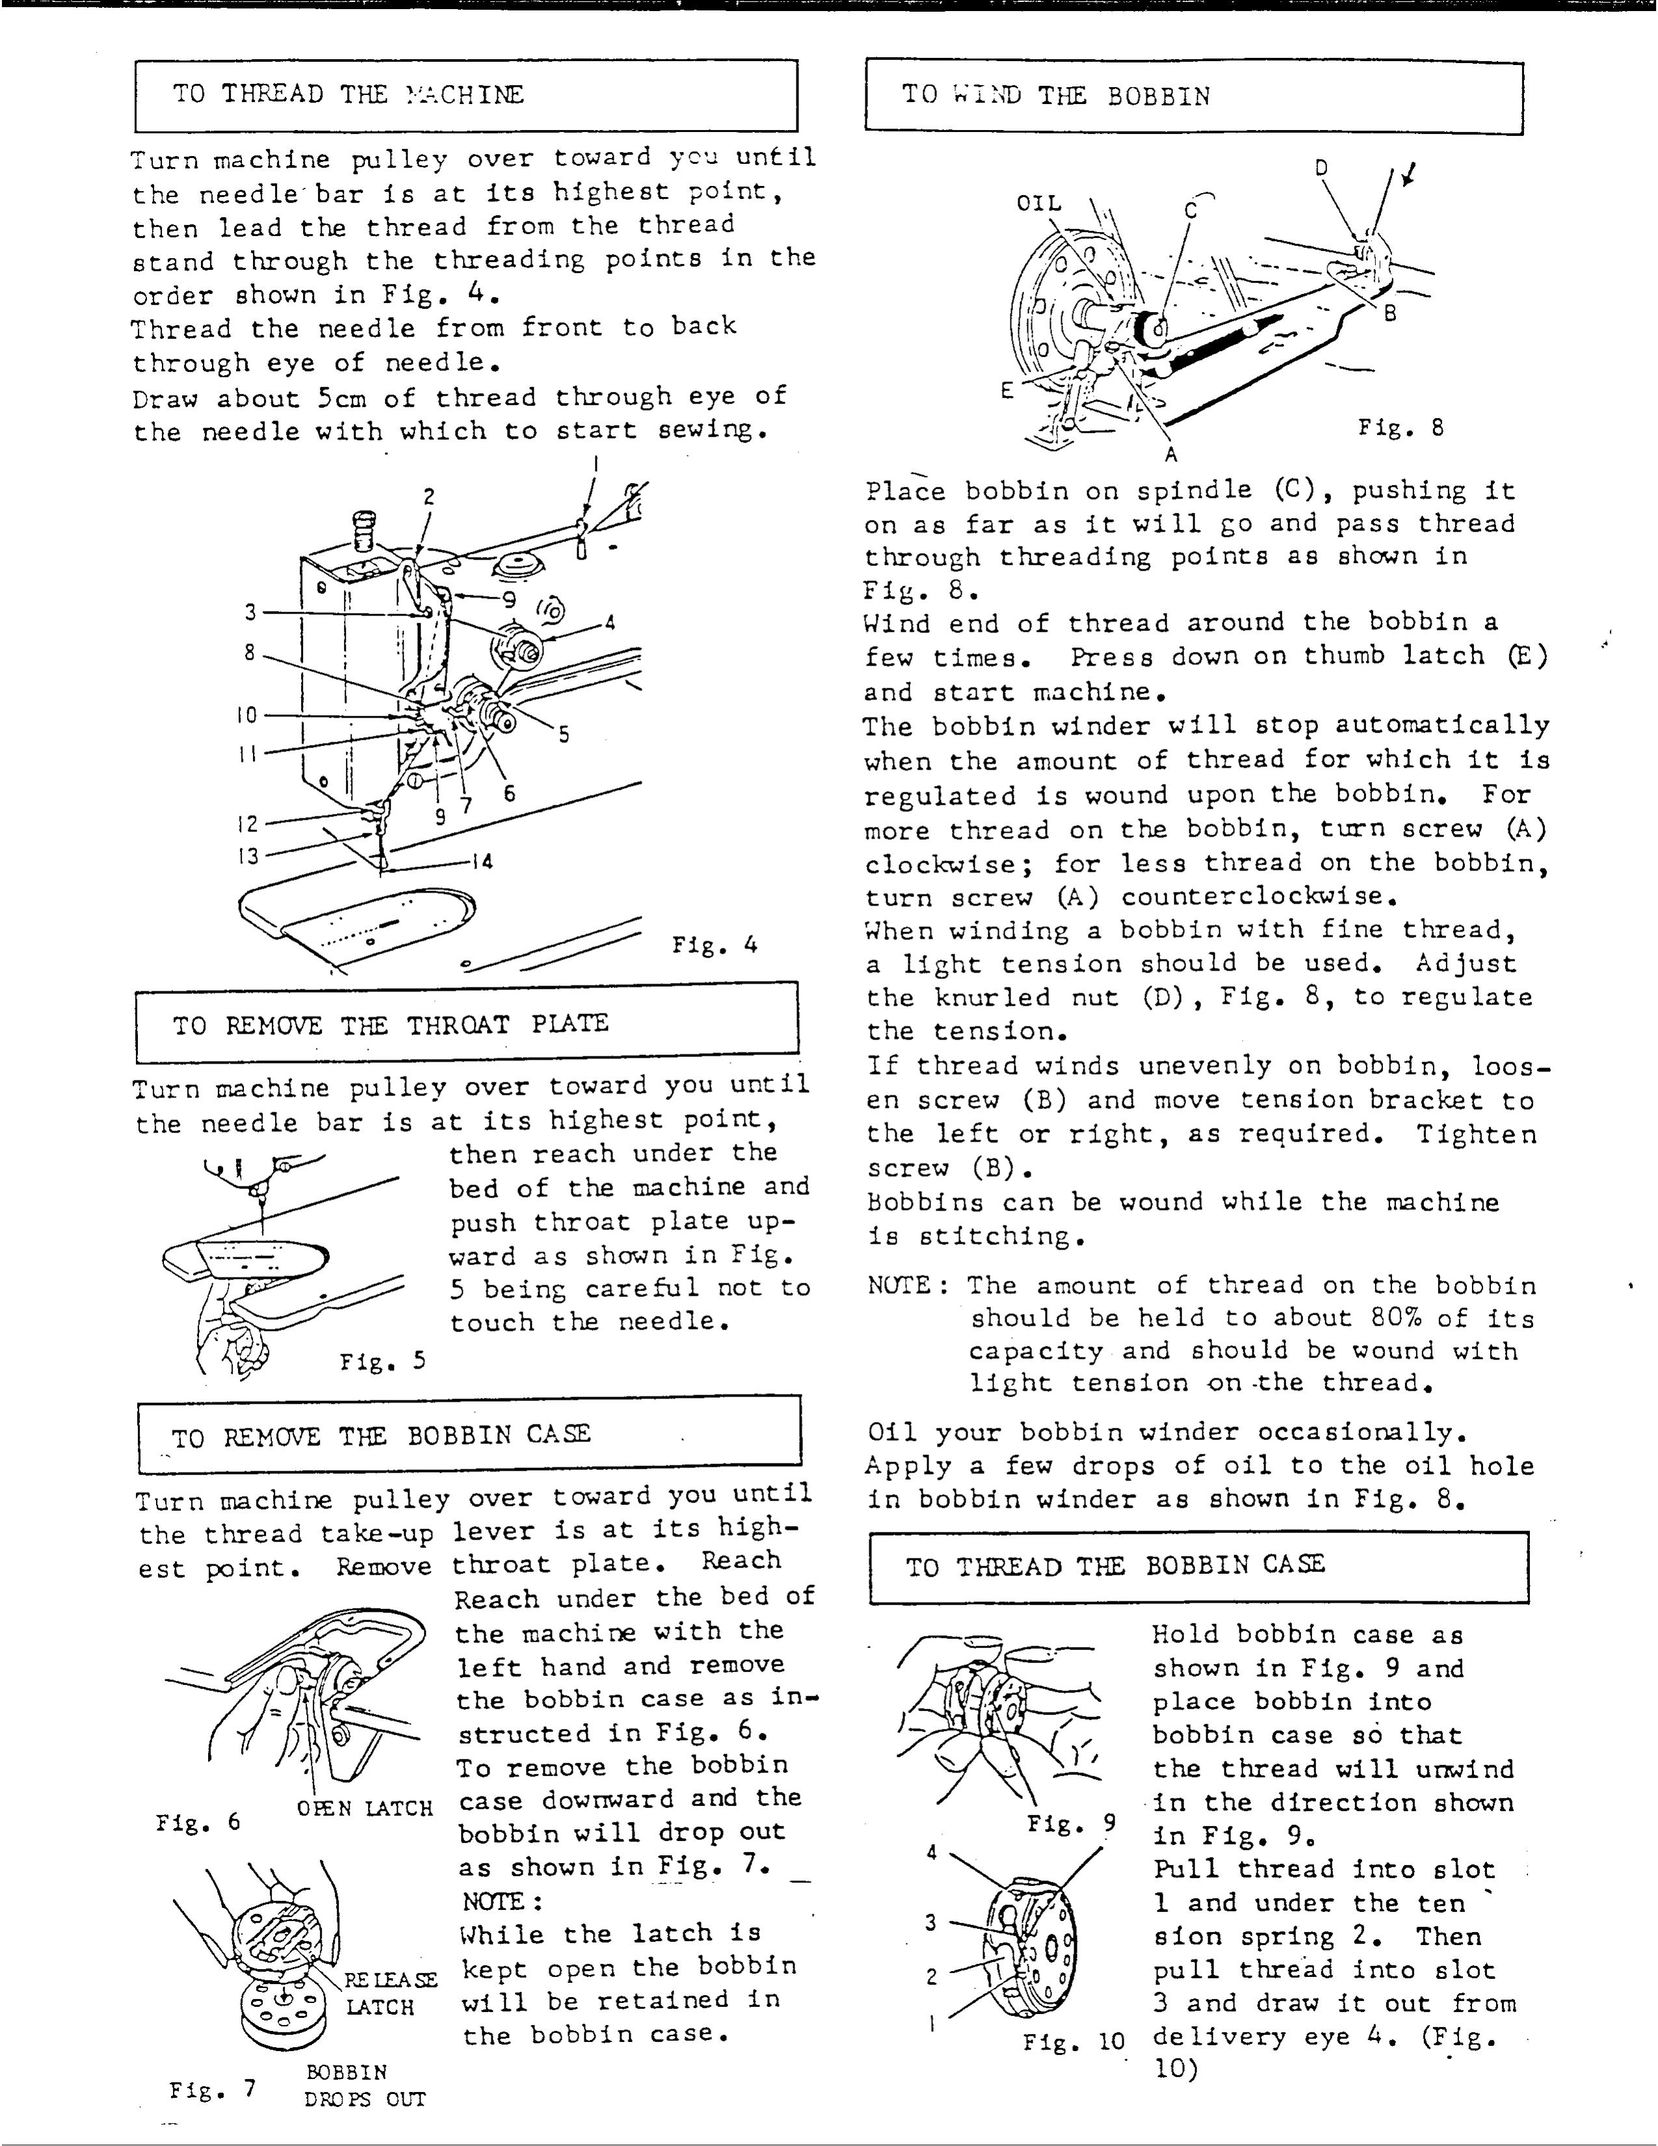 Singer 107U202 Sewing Machine User Manual (Page 3)